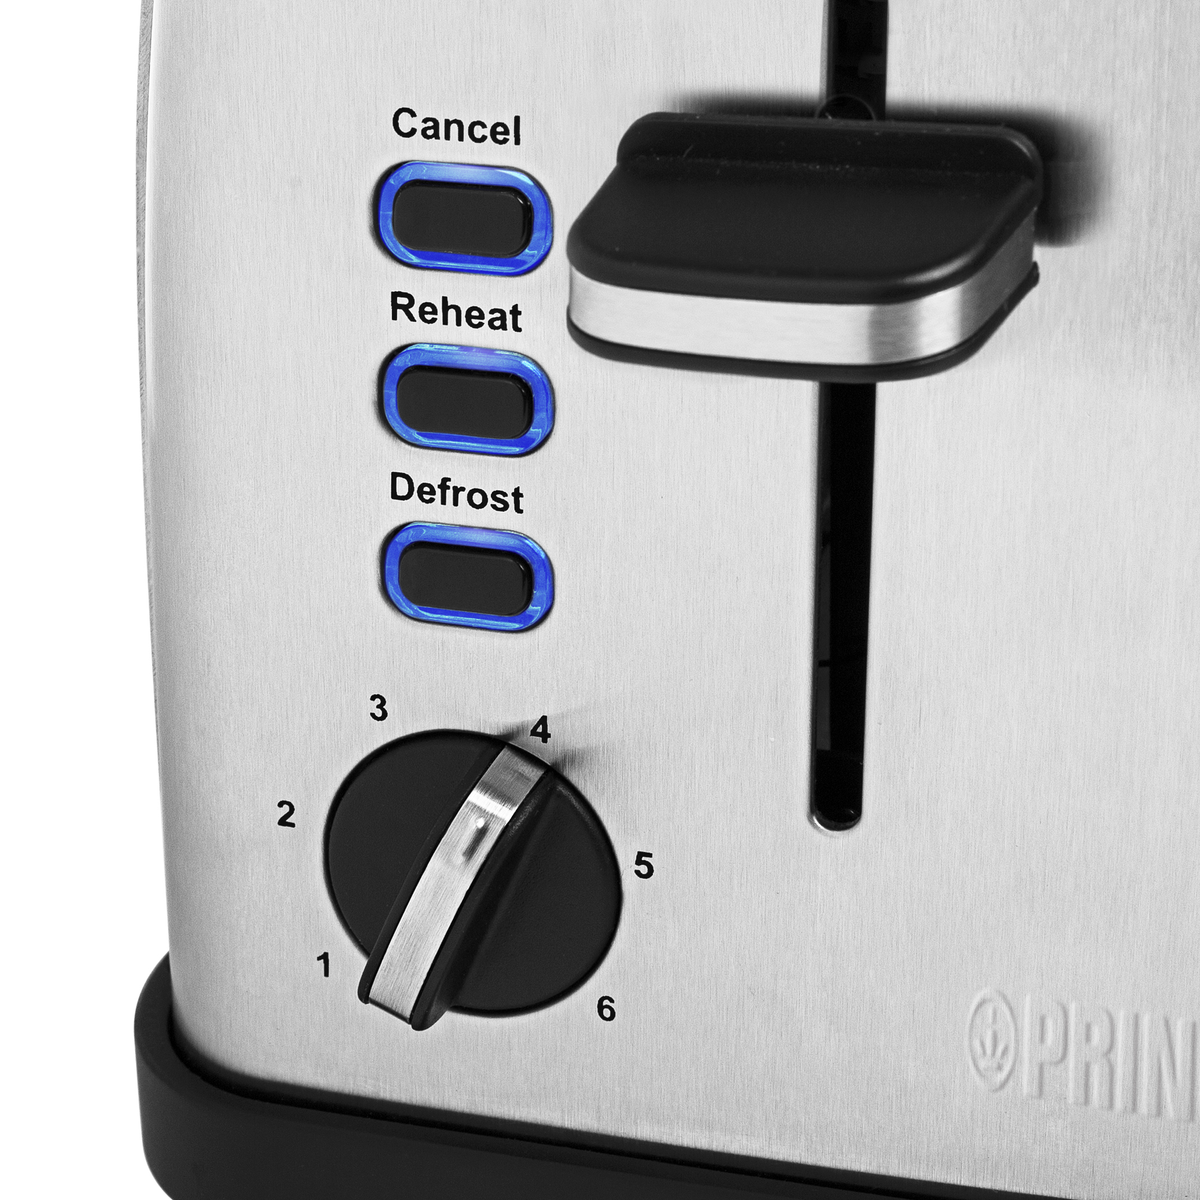 PRINCESS 426534 Toaster Silber Schlitze: 2) (1,750 Watt